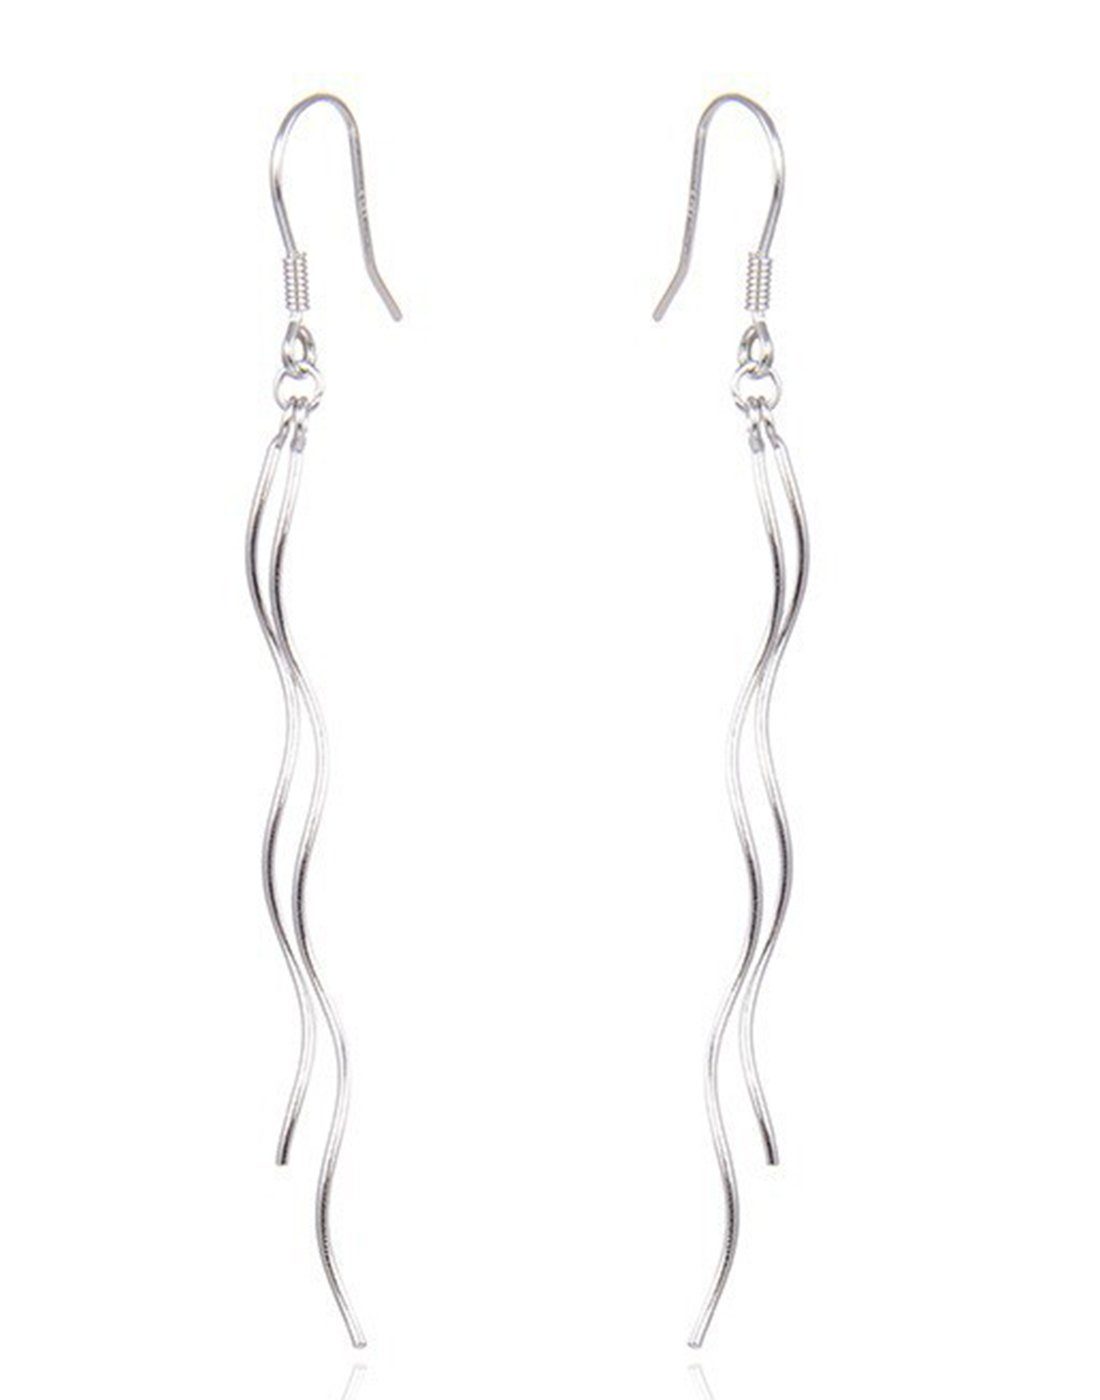 Haiaveng Paar Ohrhänger S925 Sterling Silber Ohrringe,Draht Ohrhaken Ohrringe für Damen, Lange Quaste Ohrringe Ohrringe